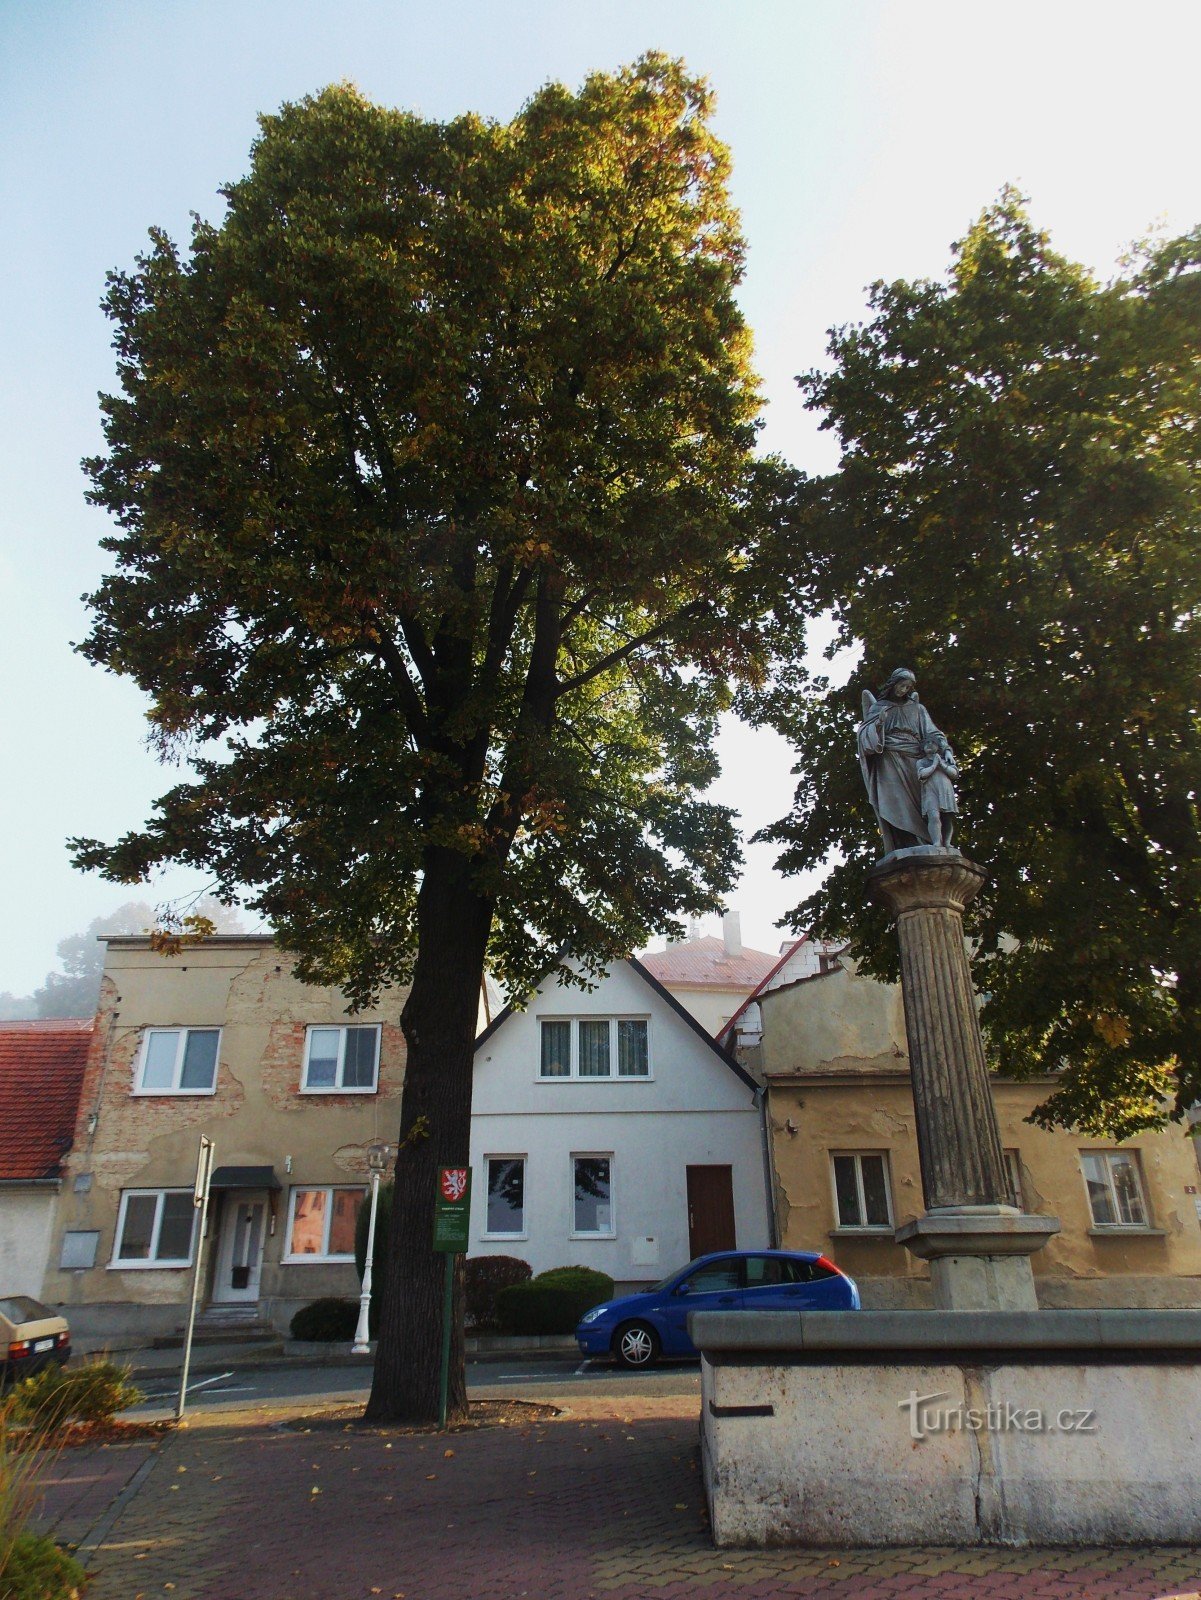 Το σιντριβάνι και το μνημείο στην πλατεία στο Staré Jičín